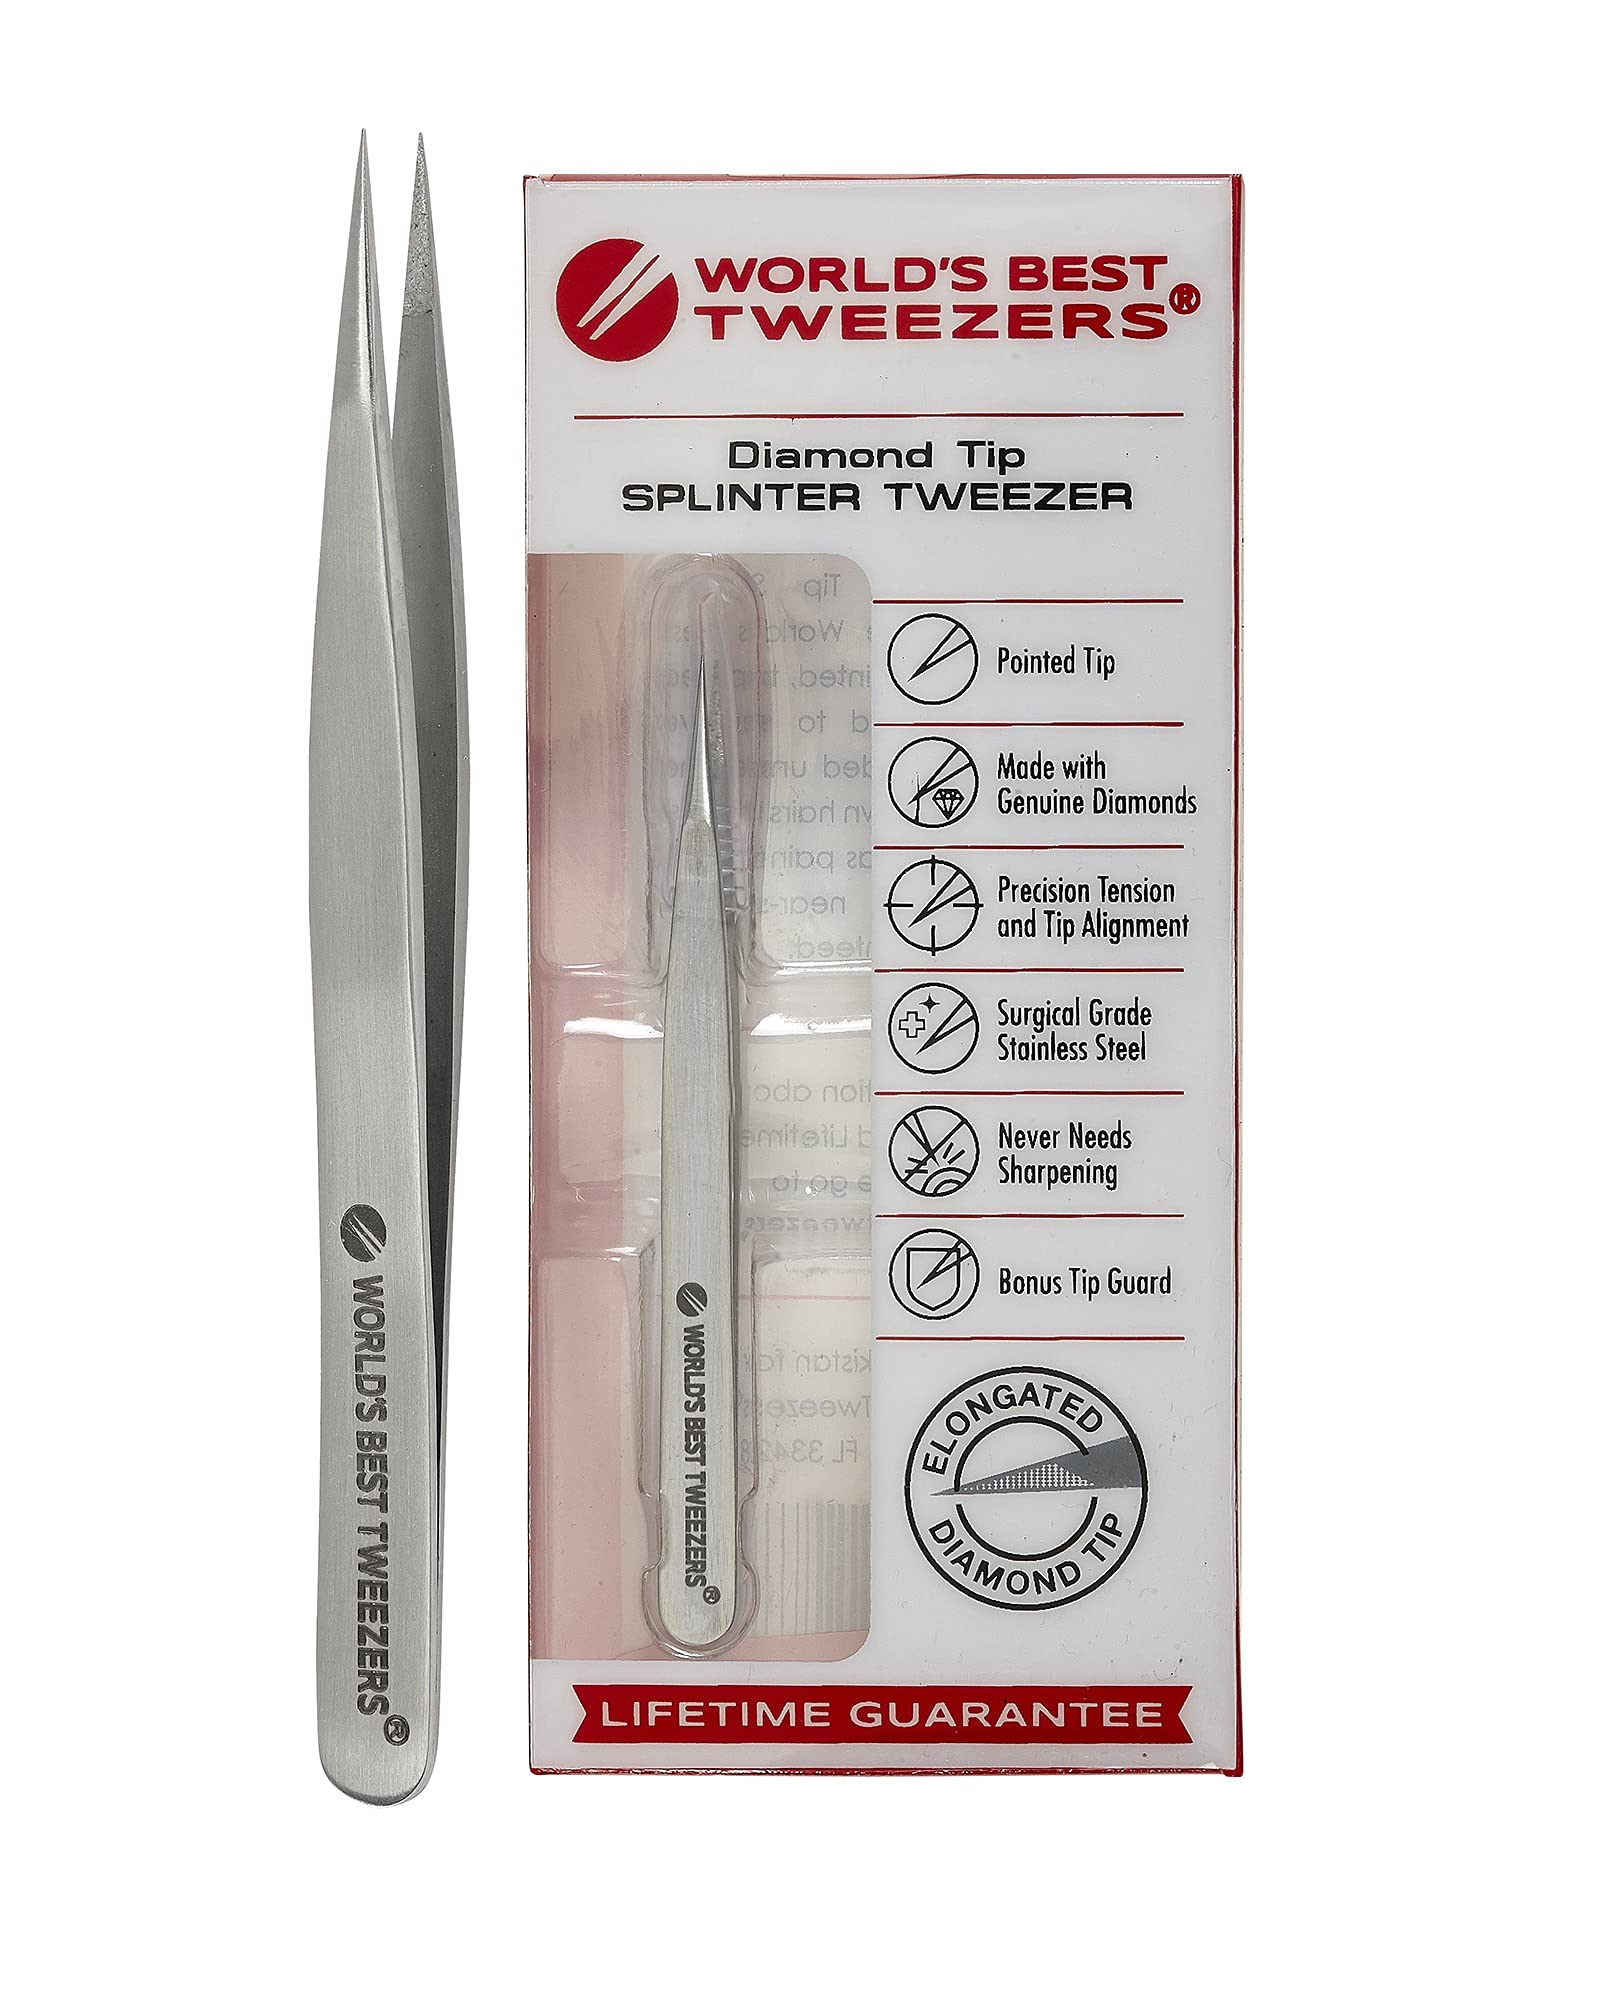 World's Best Tweezers Diamond Tip Splinter Tweezers - Diamond